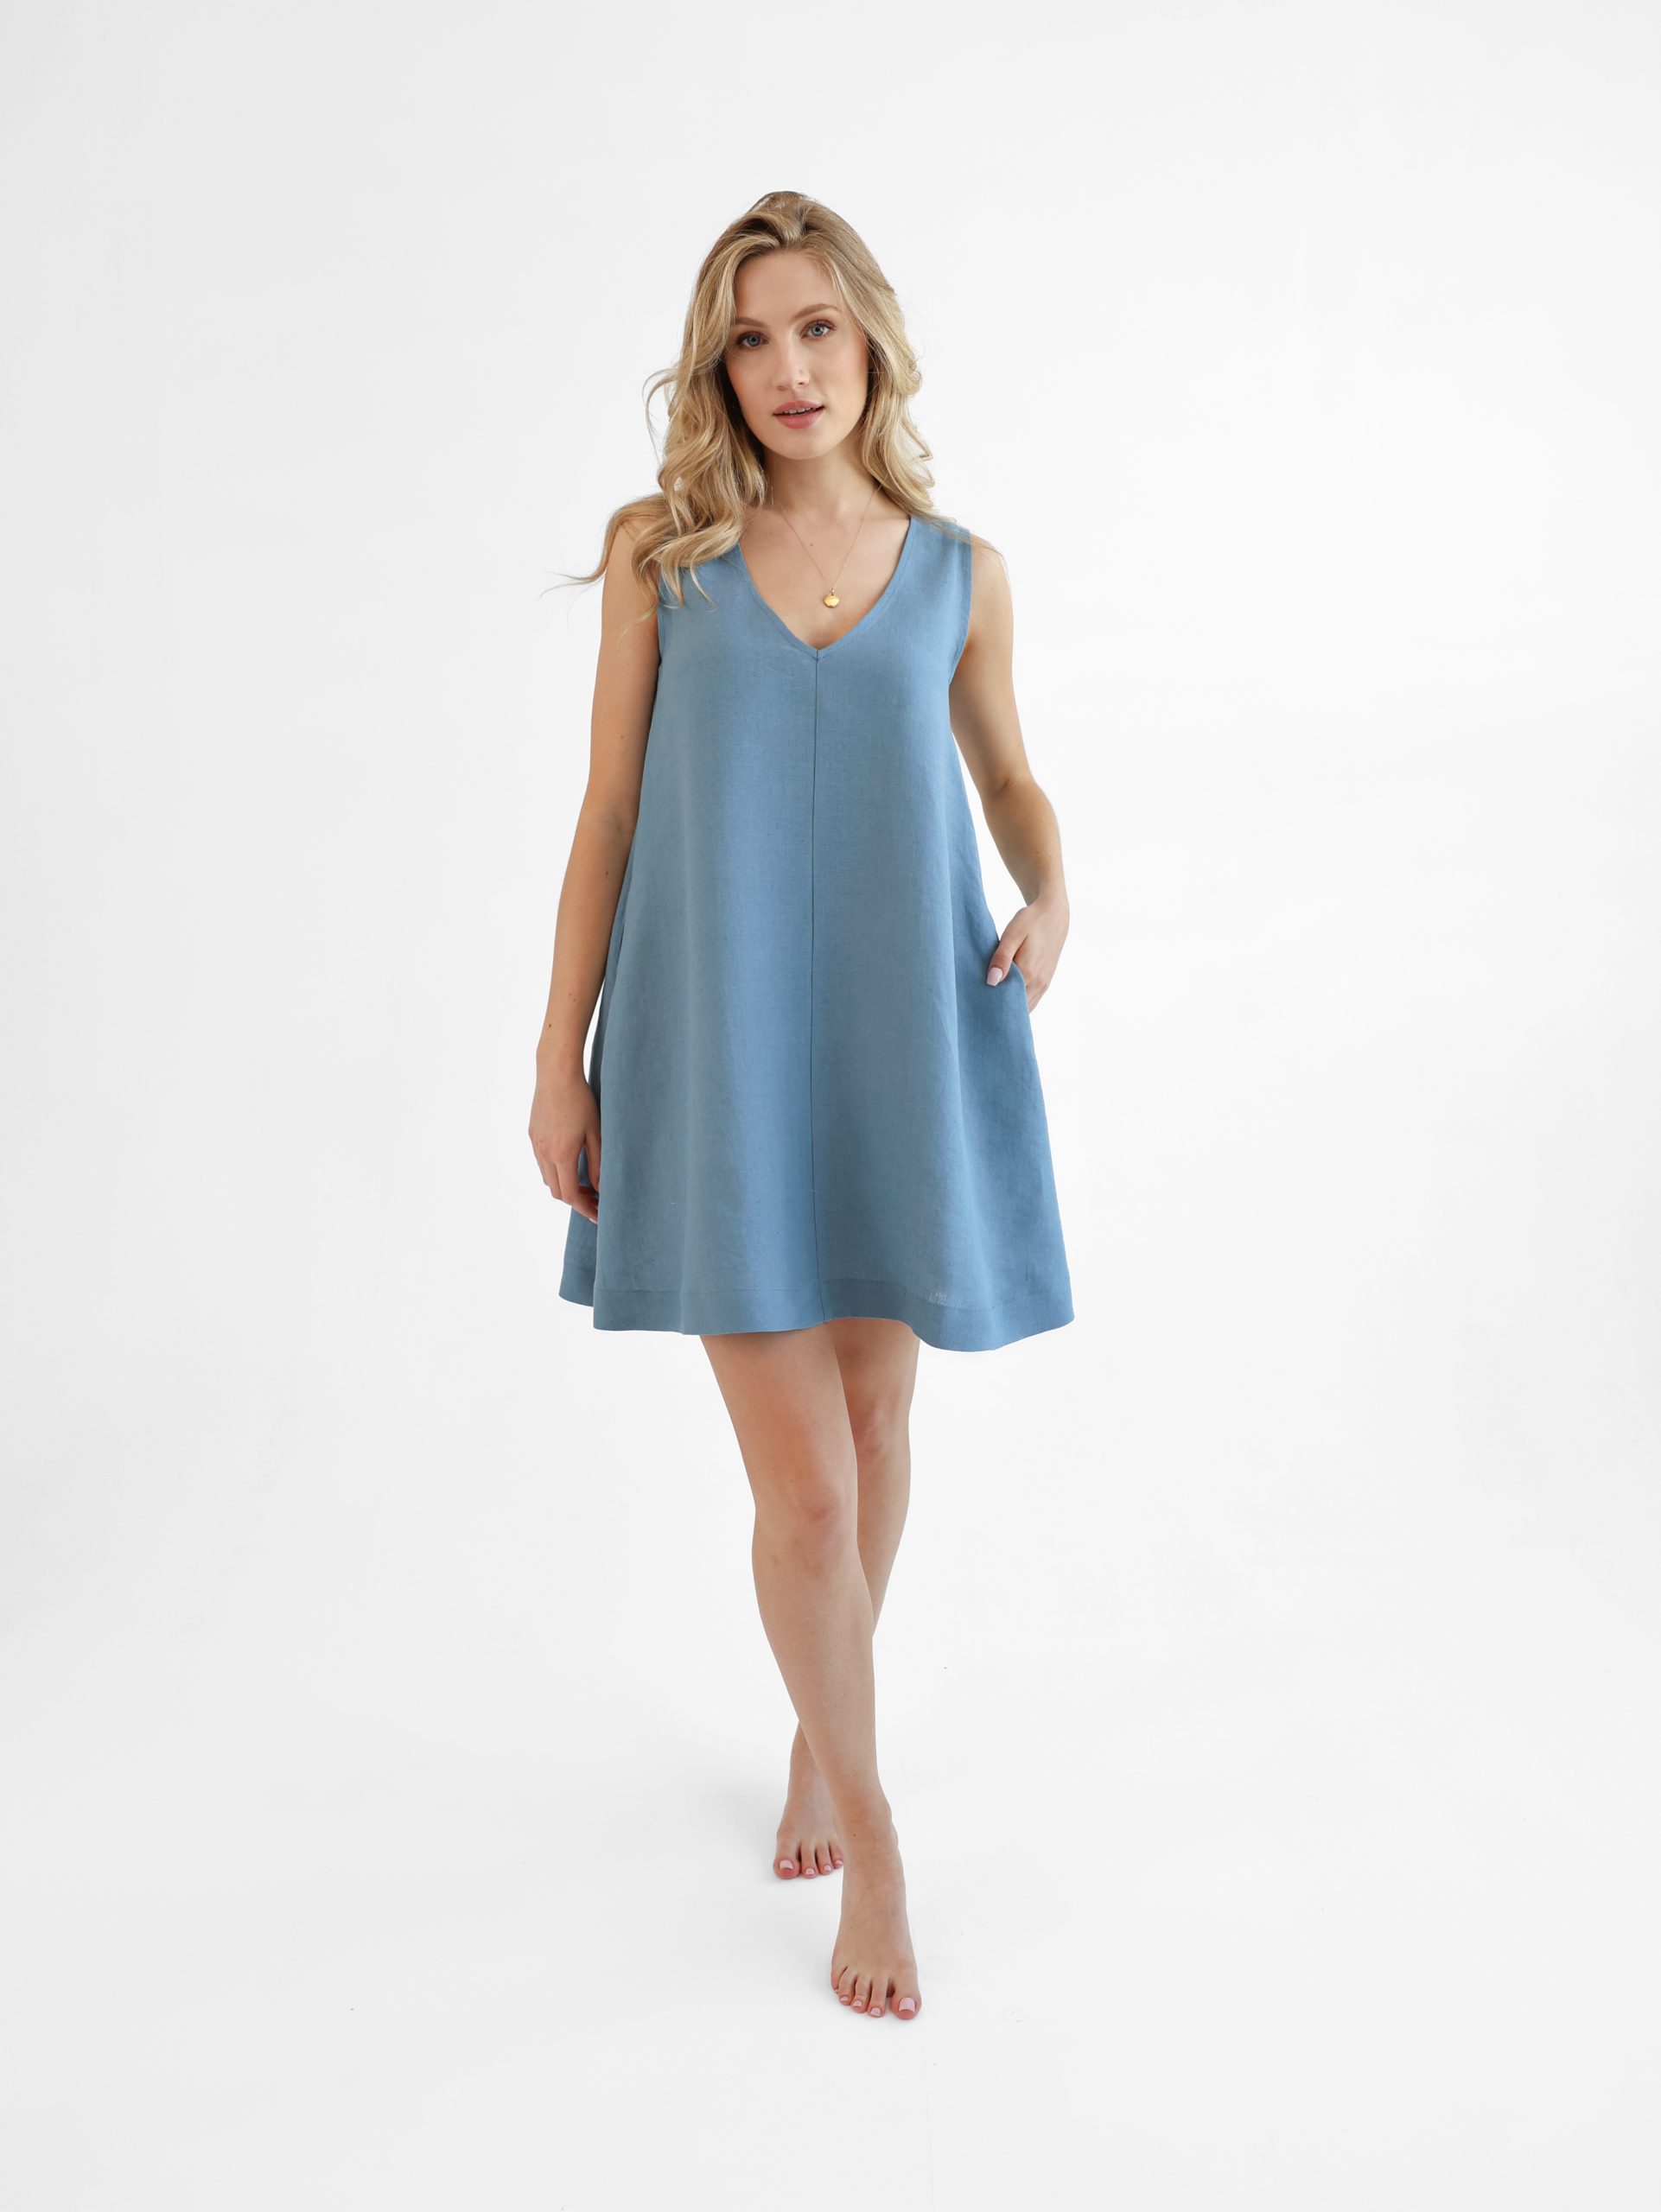 Simple linen dress